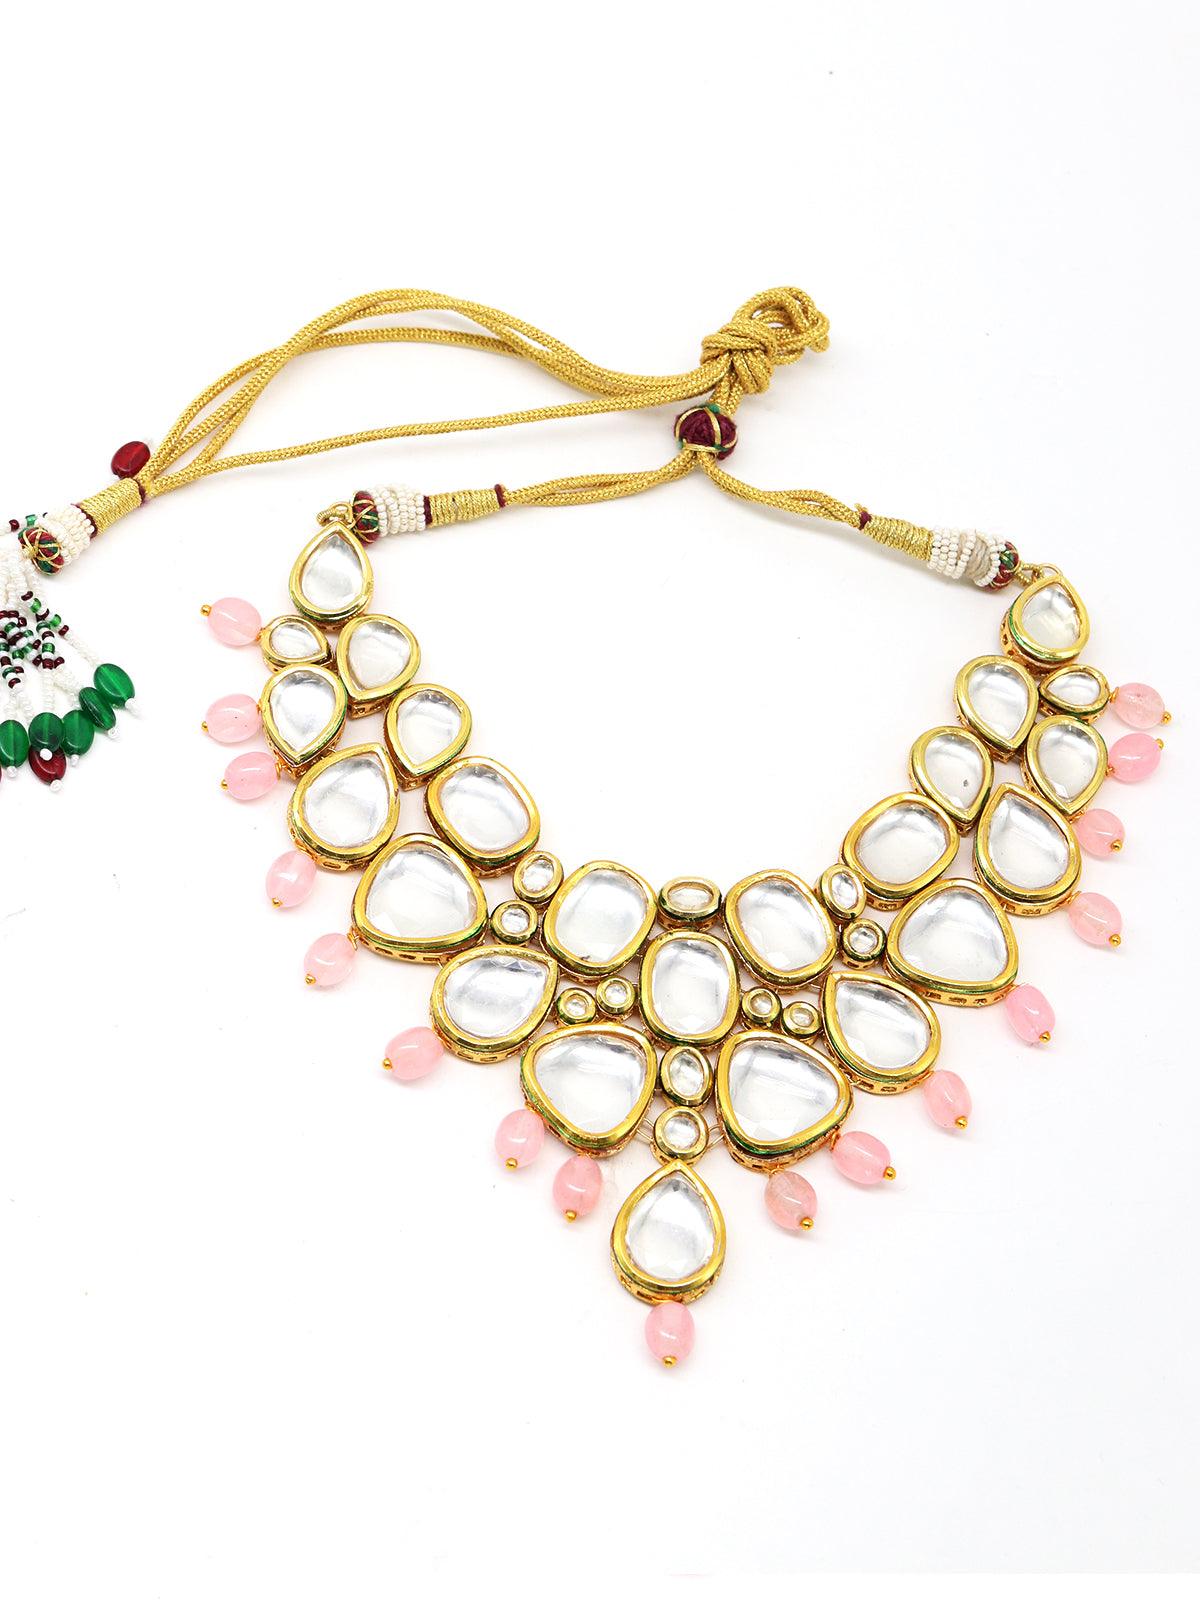 Women's Copy Of Marvelous Heavy Semiprecious Kundan & Enameled Necklace With Earrings! - Odette